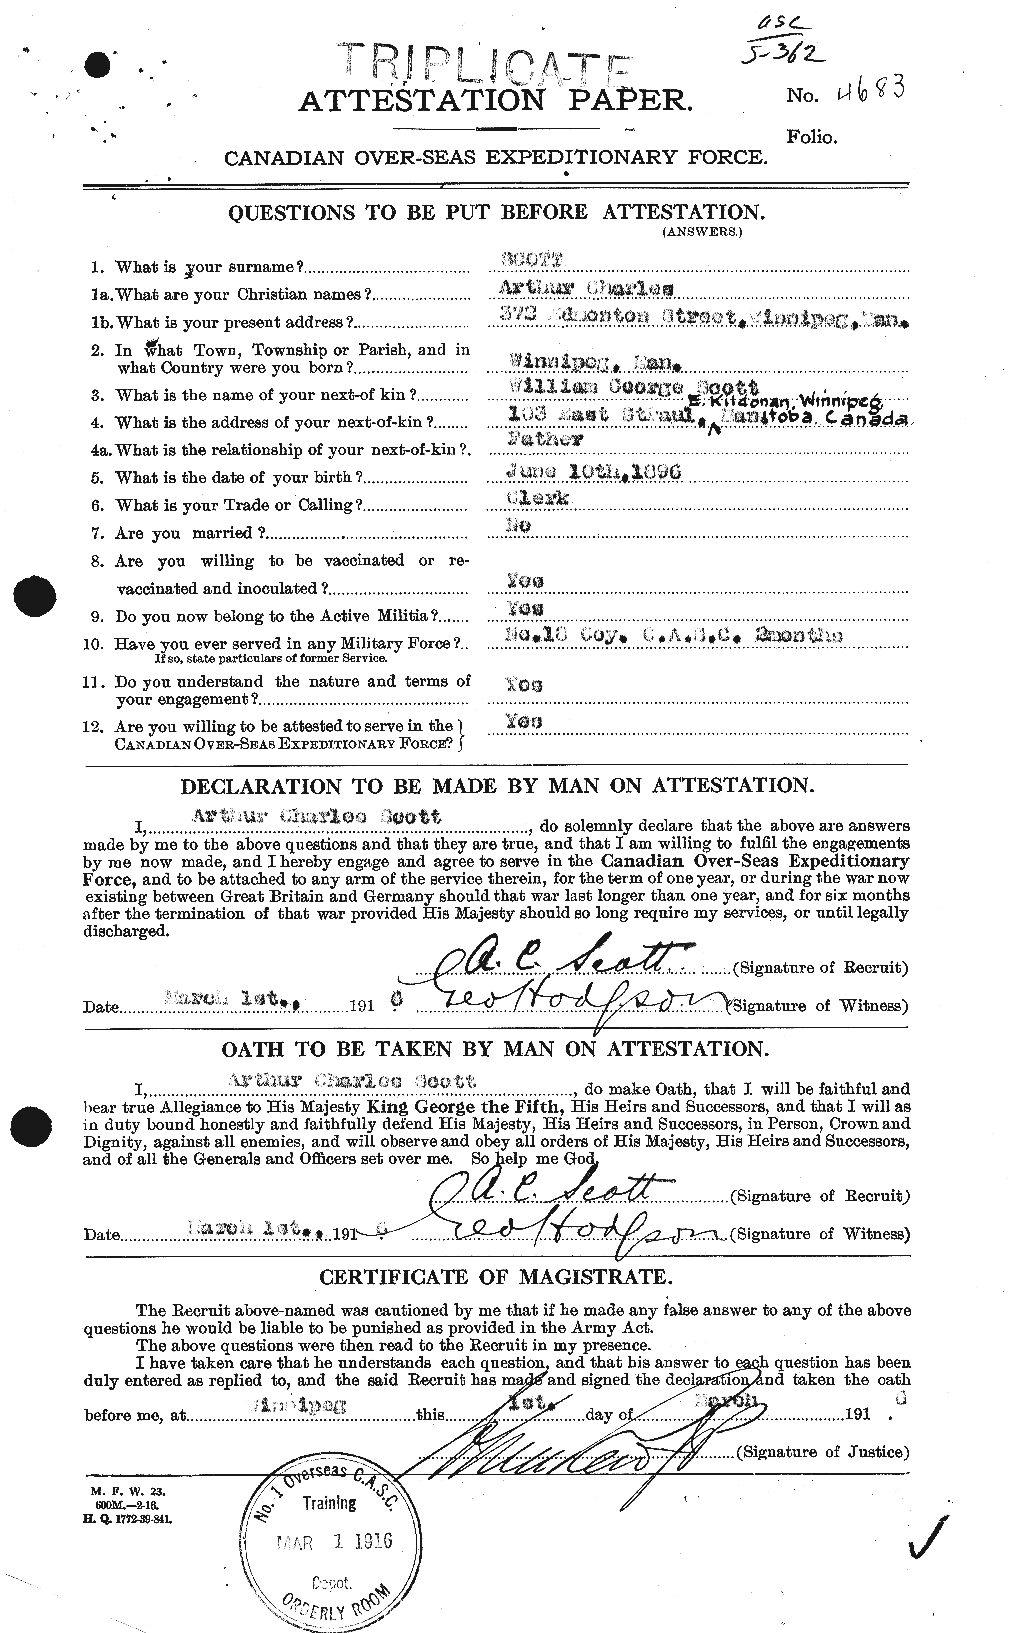 Dossiers du Personnel de la Première Guerre mondiale - CEC 086405a